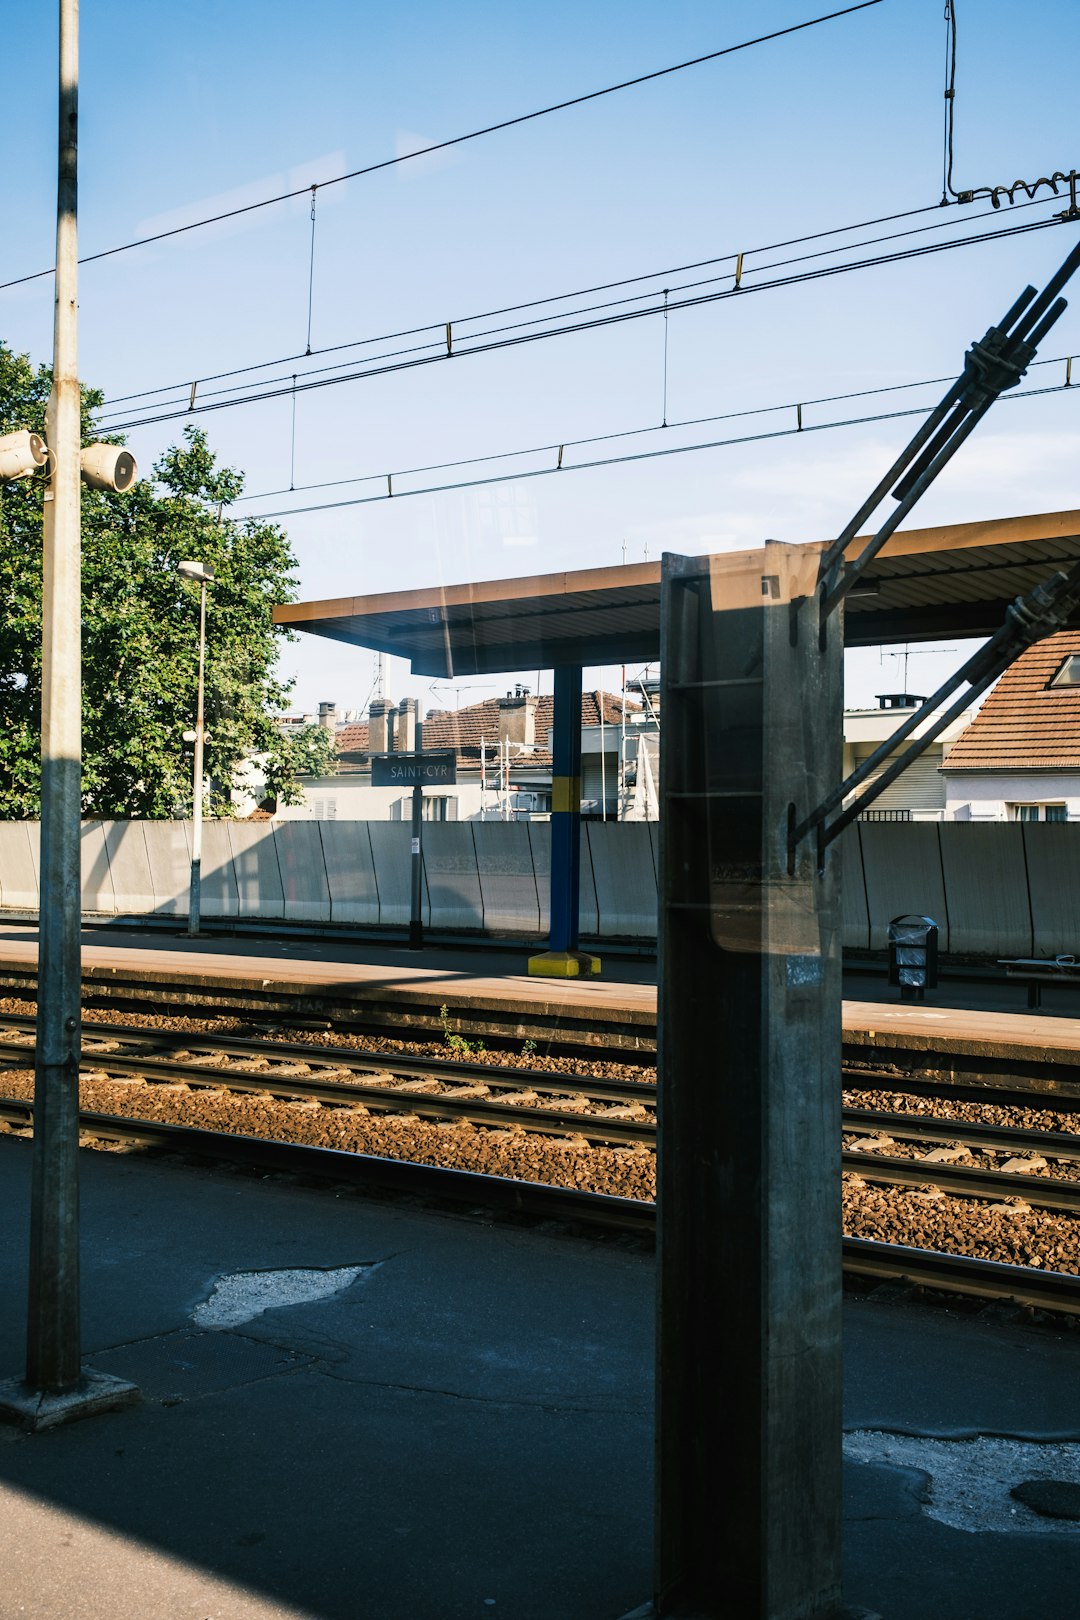 gray metal train rail during daytime